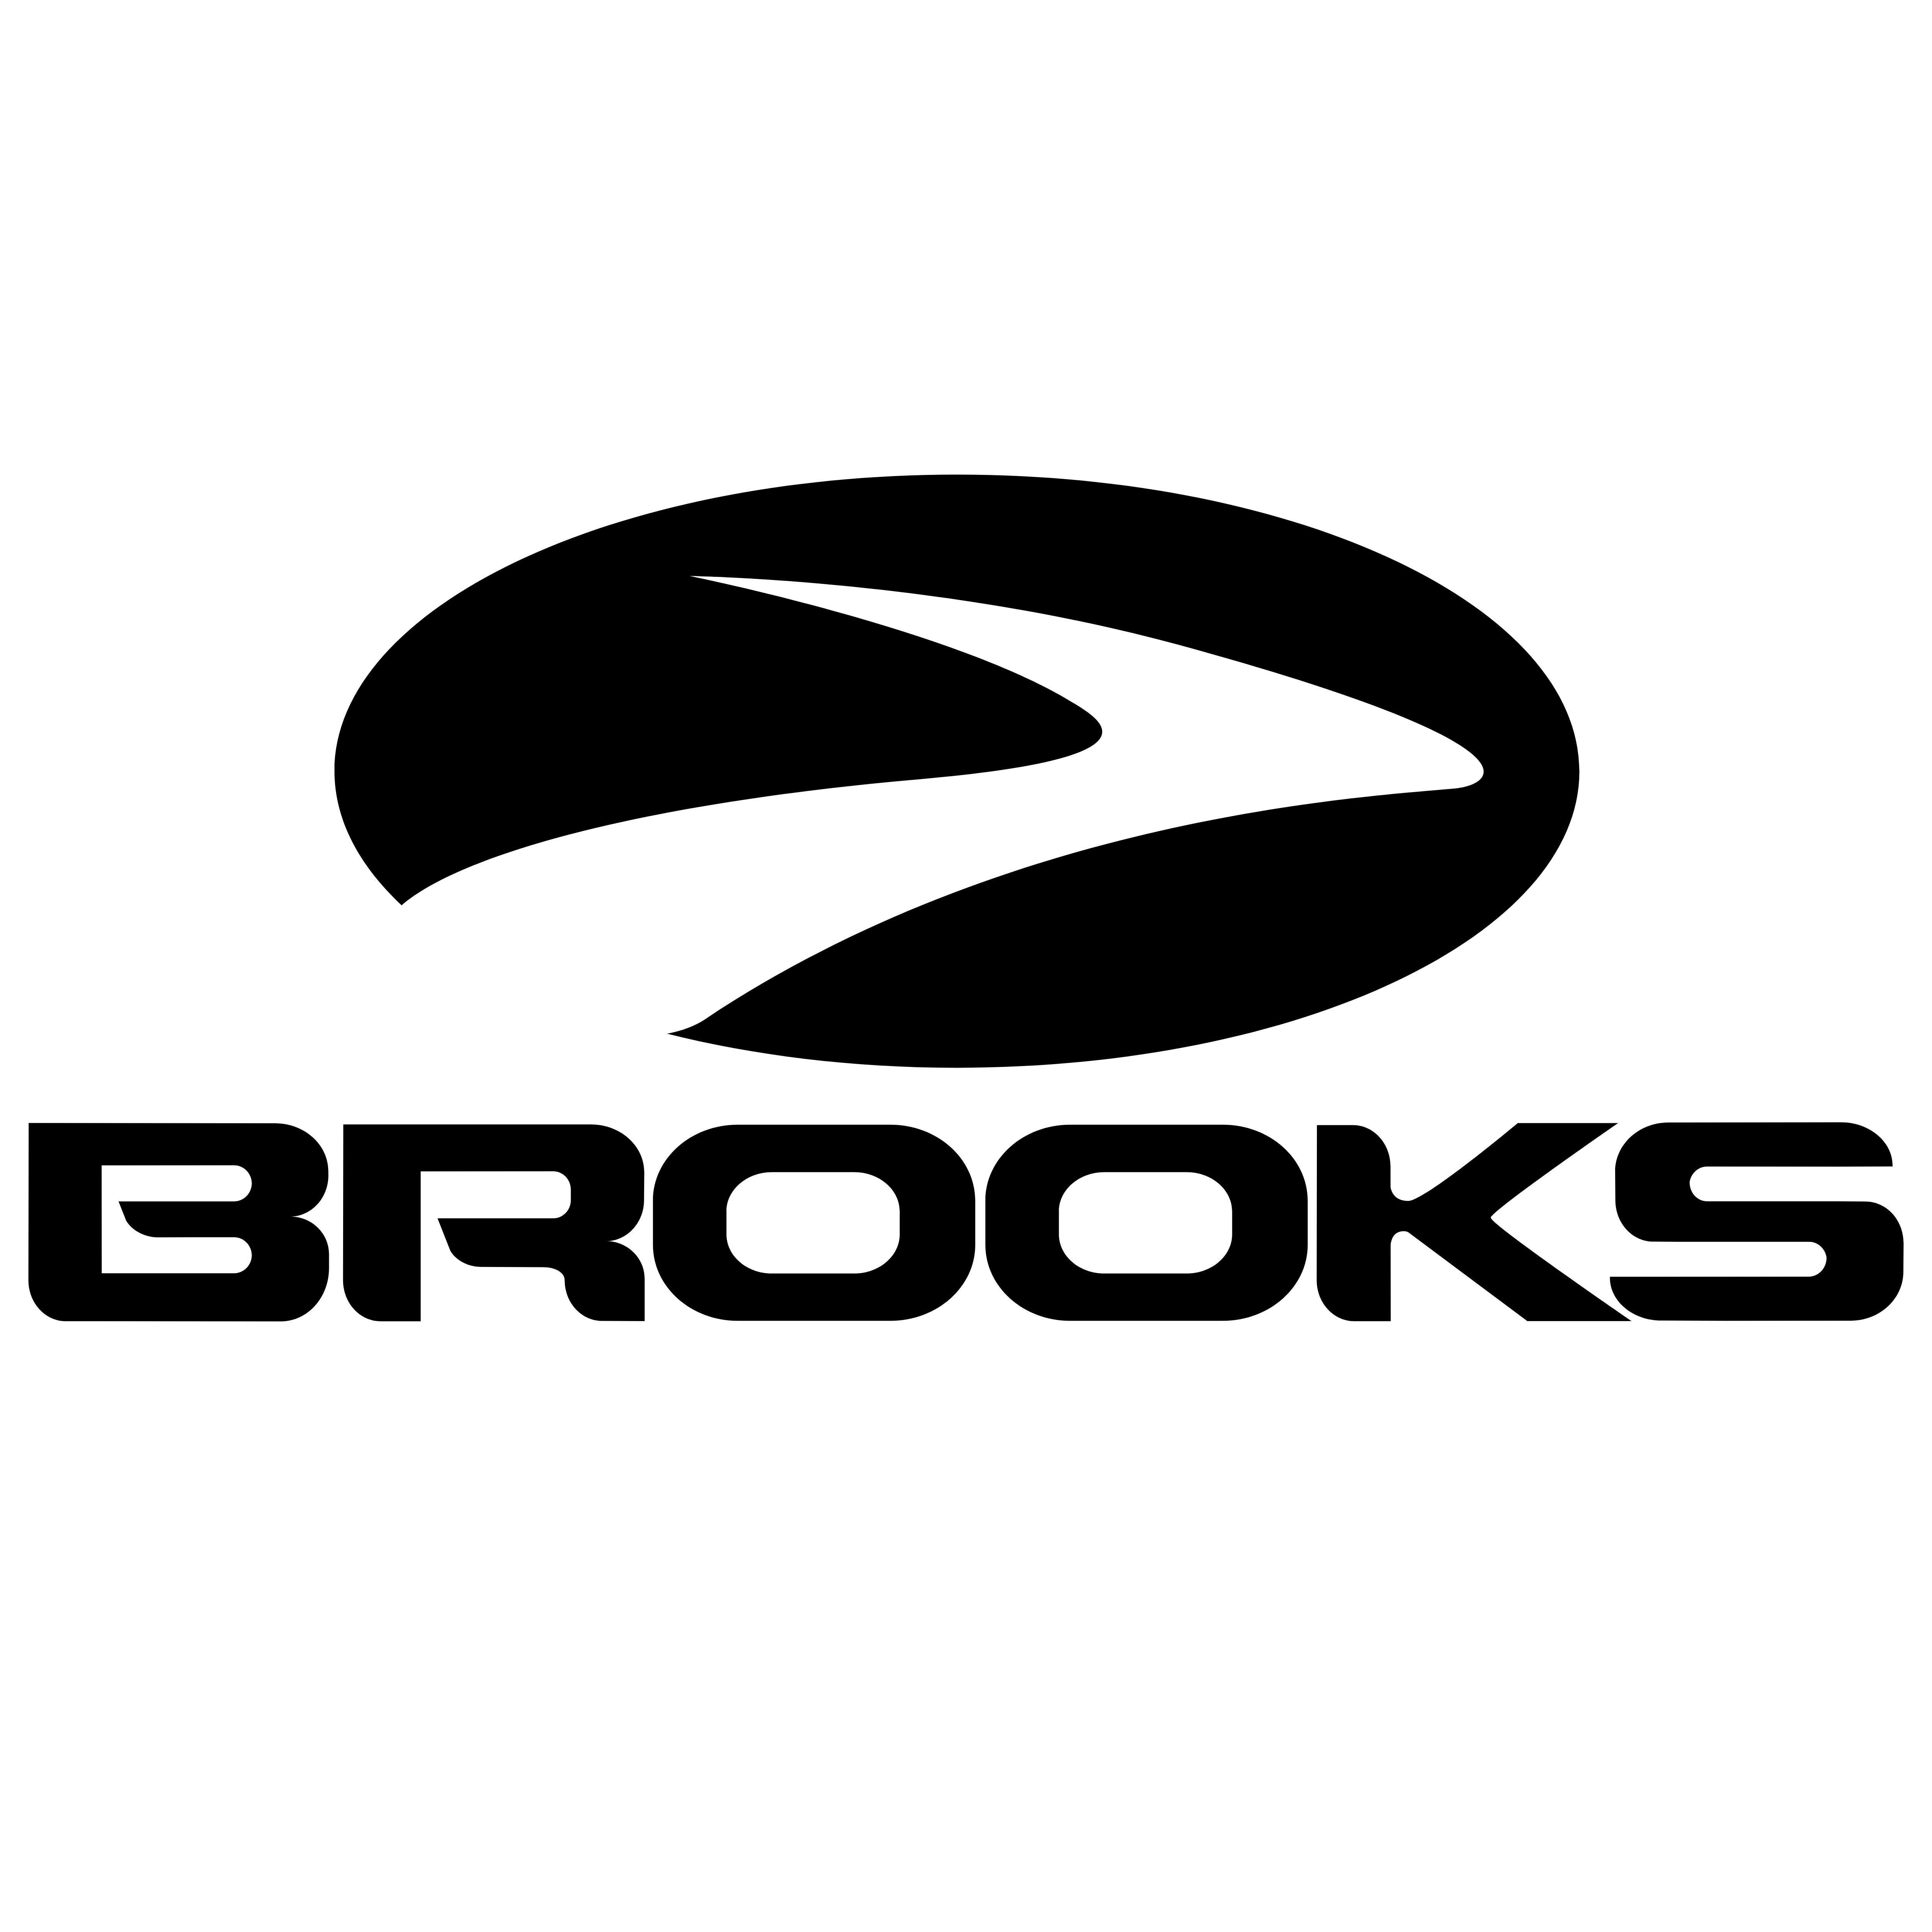 Brooks – Logos Download